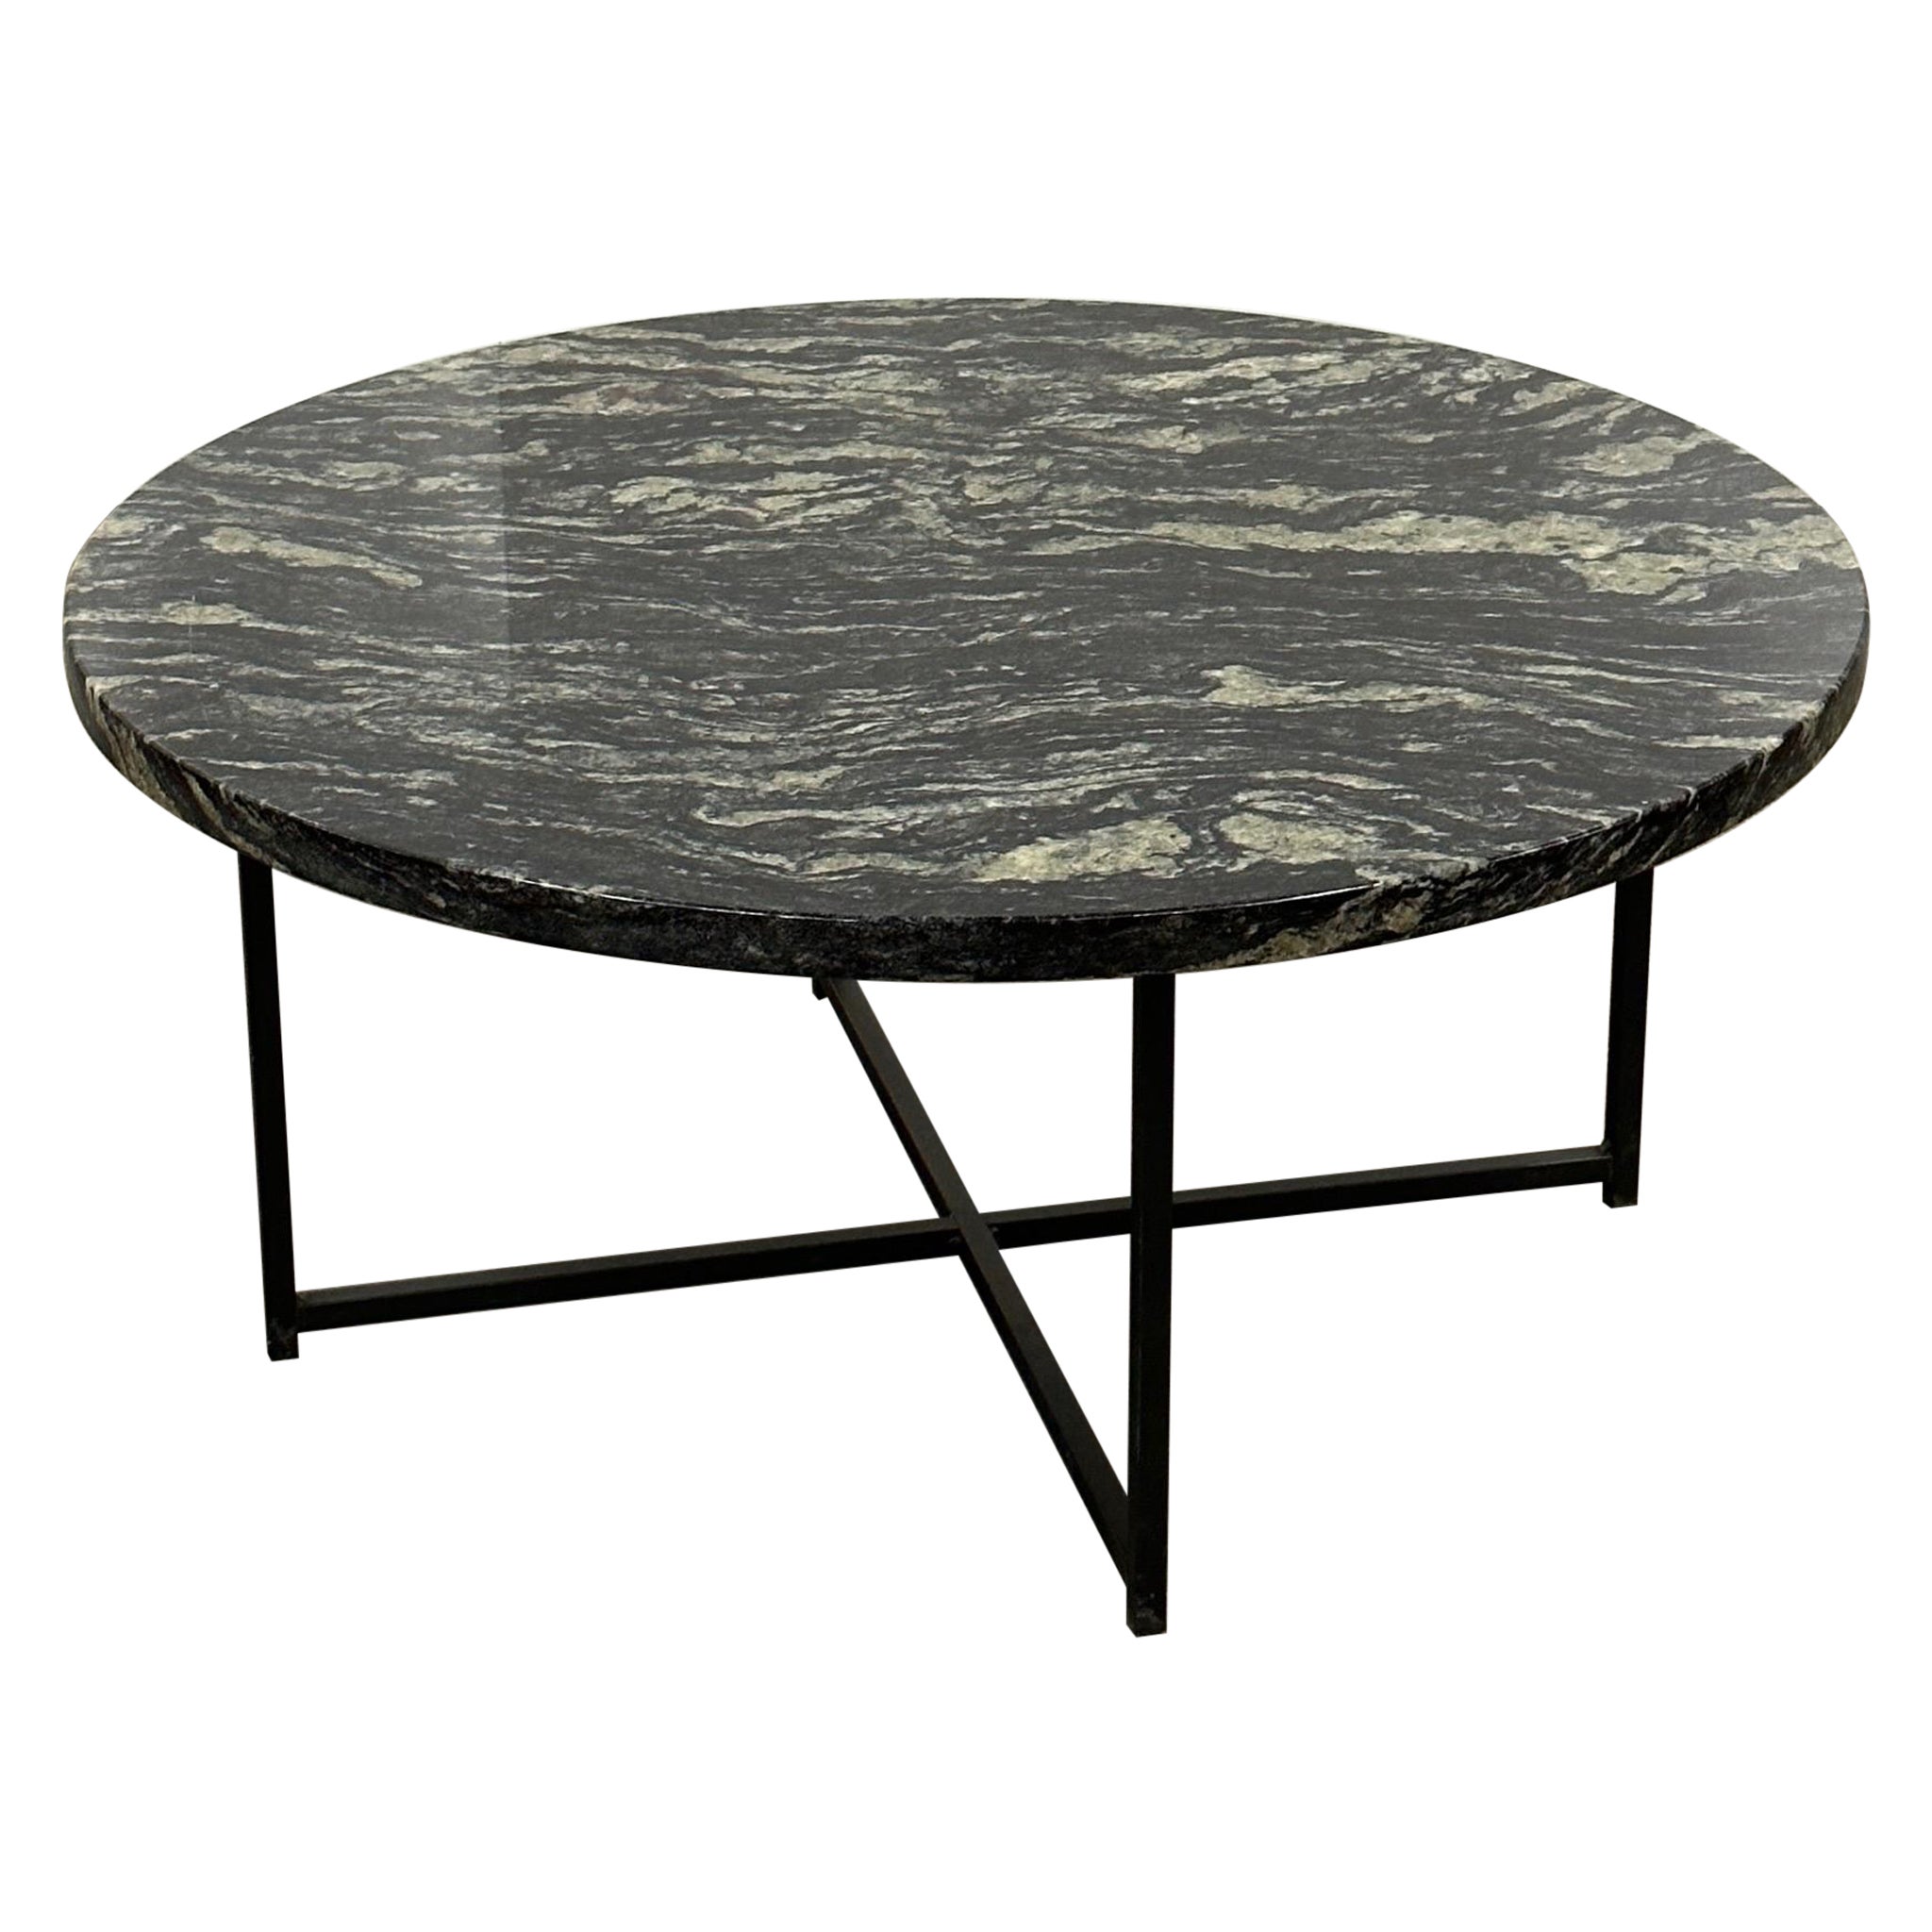 Stone Circular Coffee Table